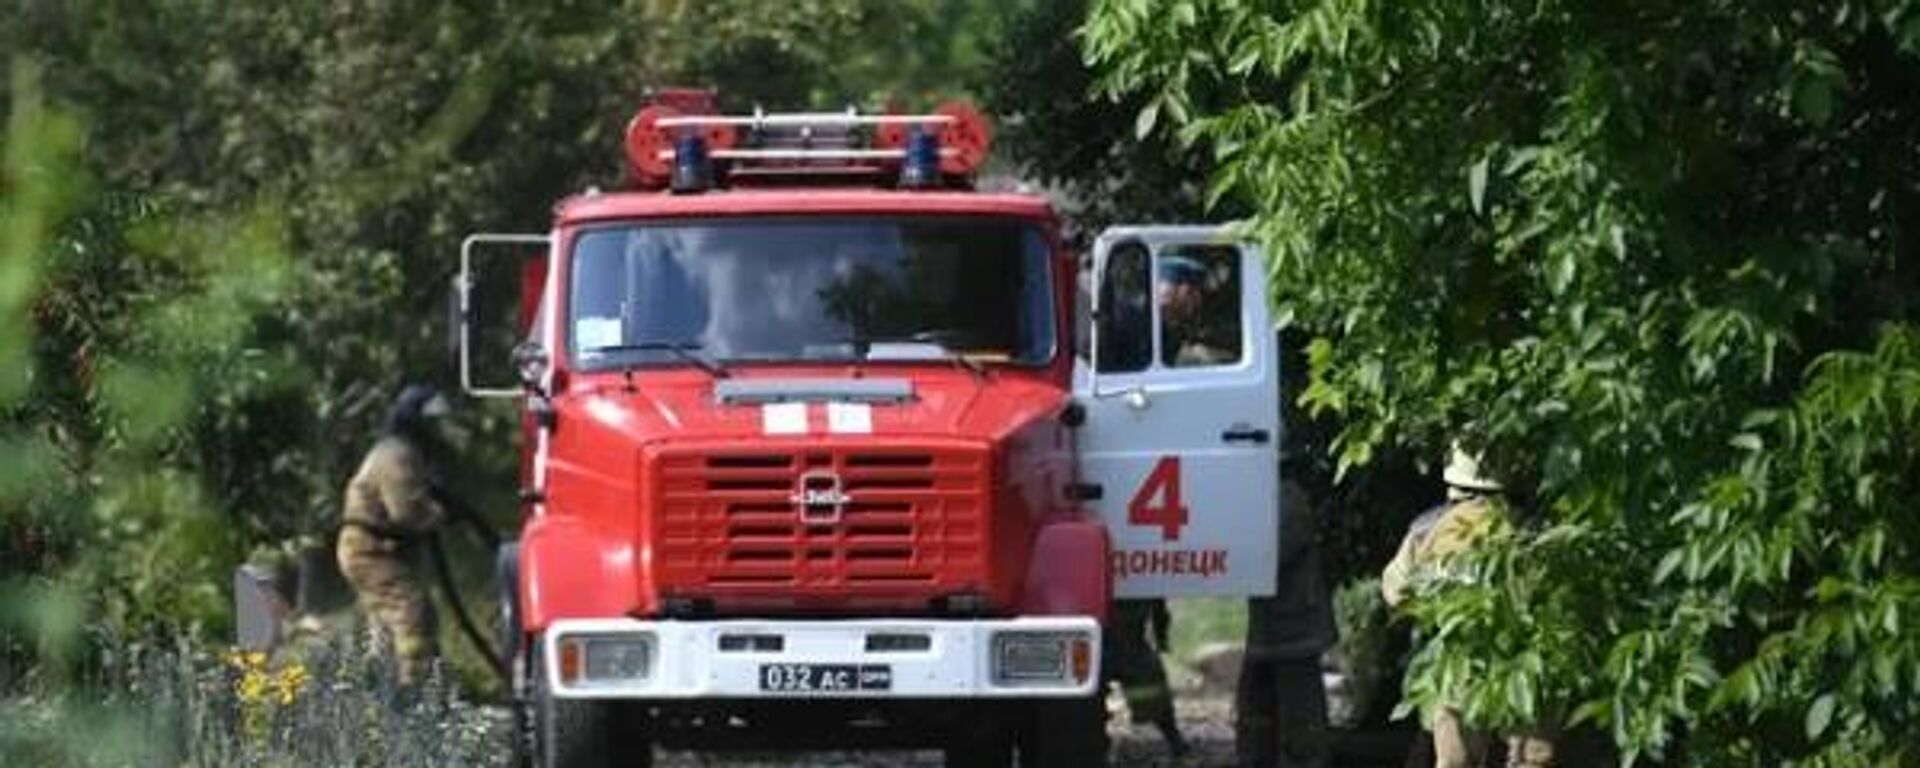 Equipes de emergência se dirigem ao local de incêndio no distrito de Budennovsky, na República Popular de Donetsk (RPD), em 26 de julho de 2022 - Sputnik Brasil, 1920, 26.07.2022